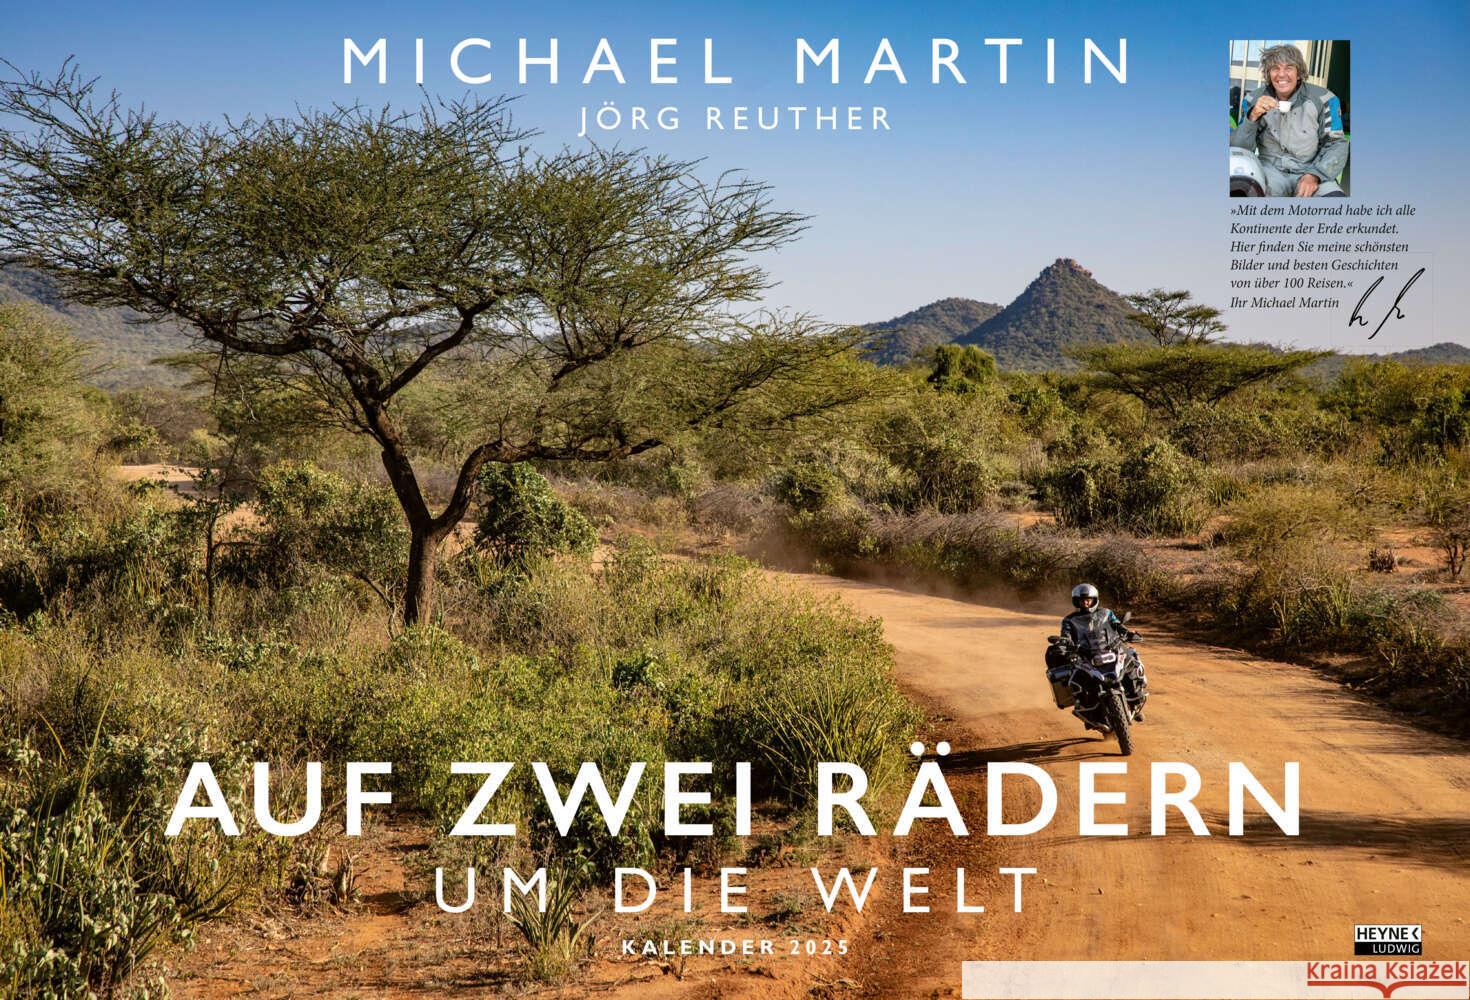 Auf zwei Rädern um die Welt - Der Motorrad-Reise-Kalender 2025 Martin, Michael 9783453239487 Ludwig bei Heyne - książka